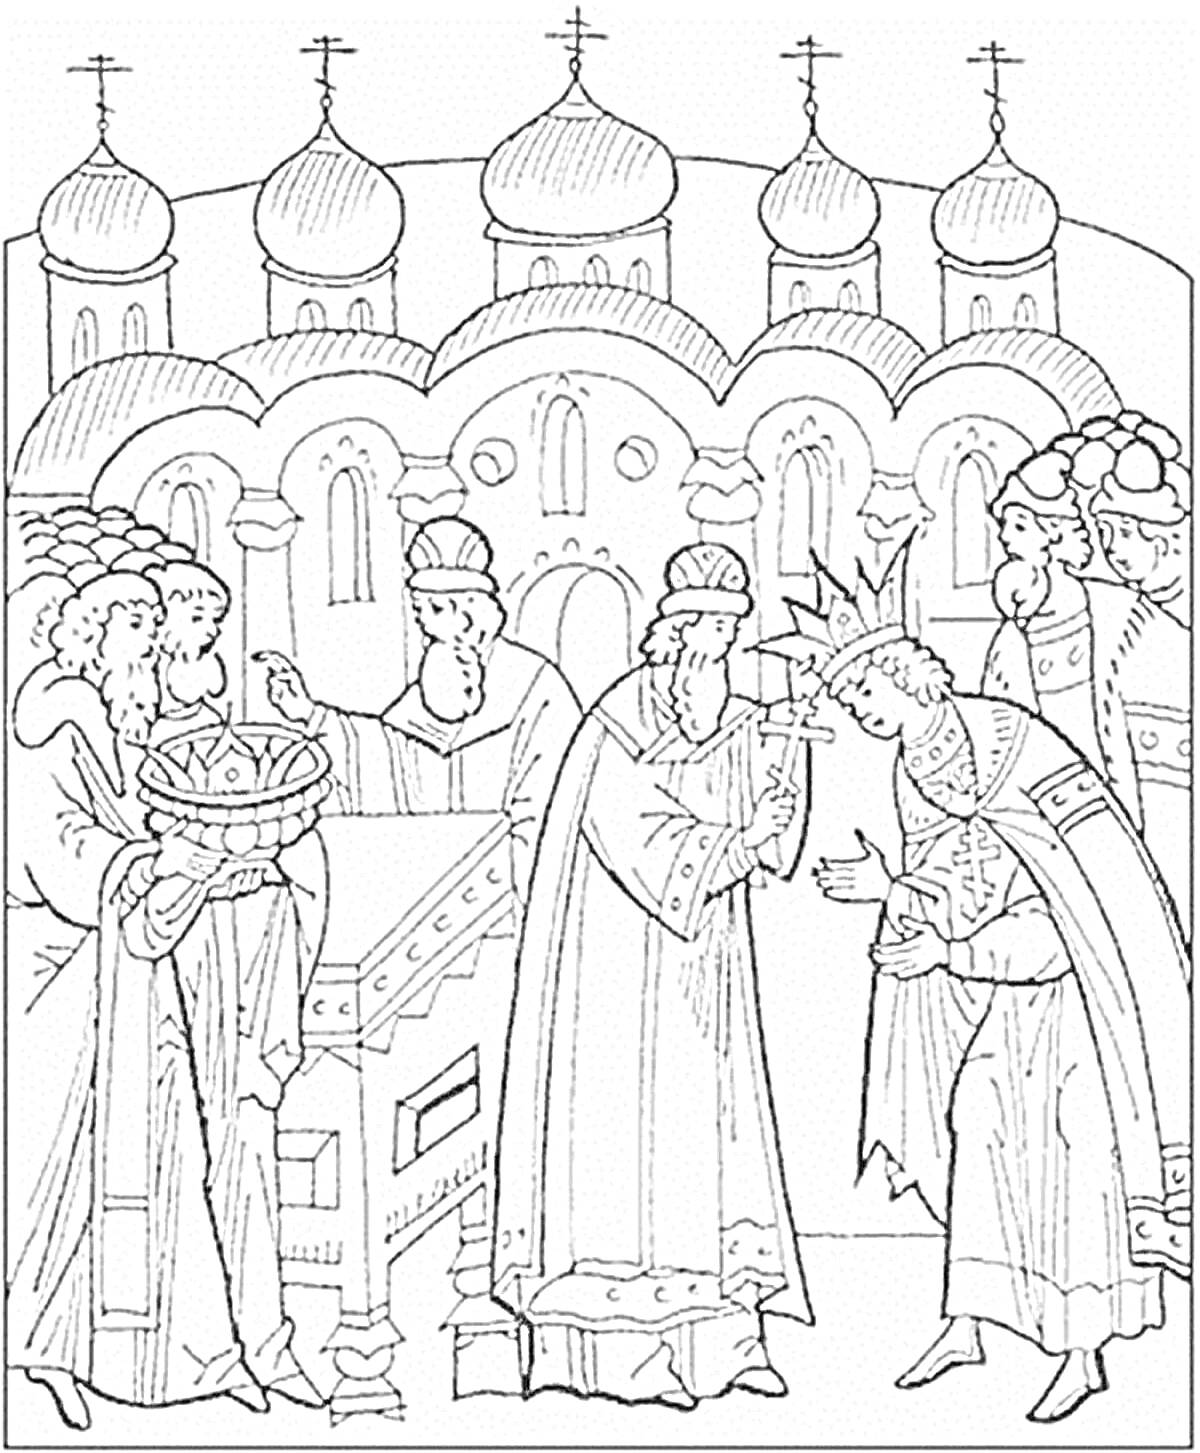 Раскраска Князь Владимир, обряд посвящения, священники в церковных одеяниях, храм с куполами на заднем плане